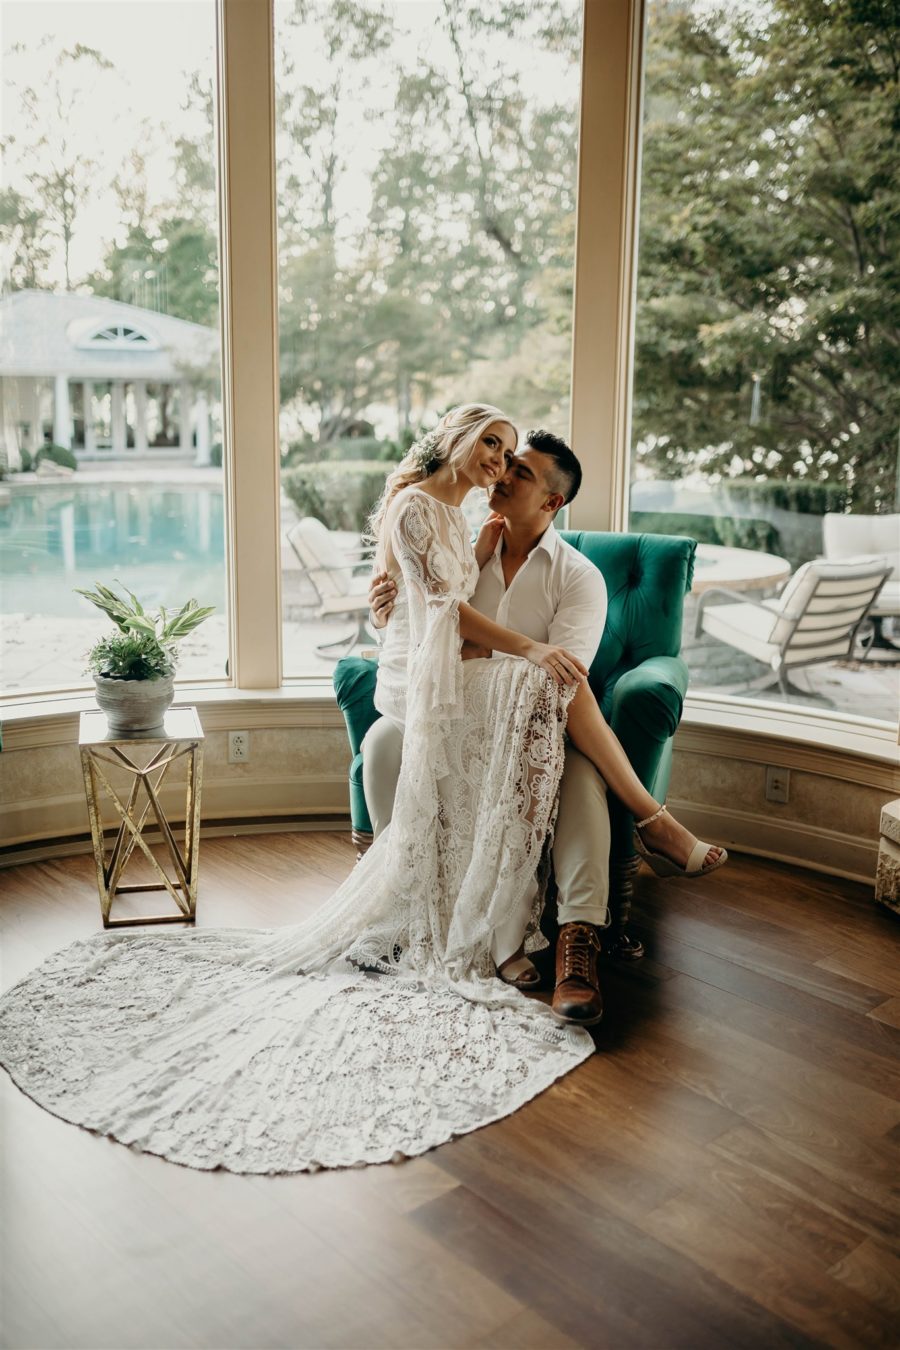 Boho Wedding Decor: Boho Wedding Dress for Winter Wedding Styled Shoot featured on Nashville Bride Guide